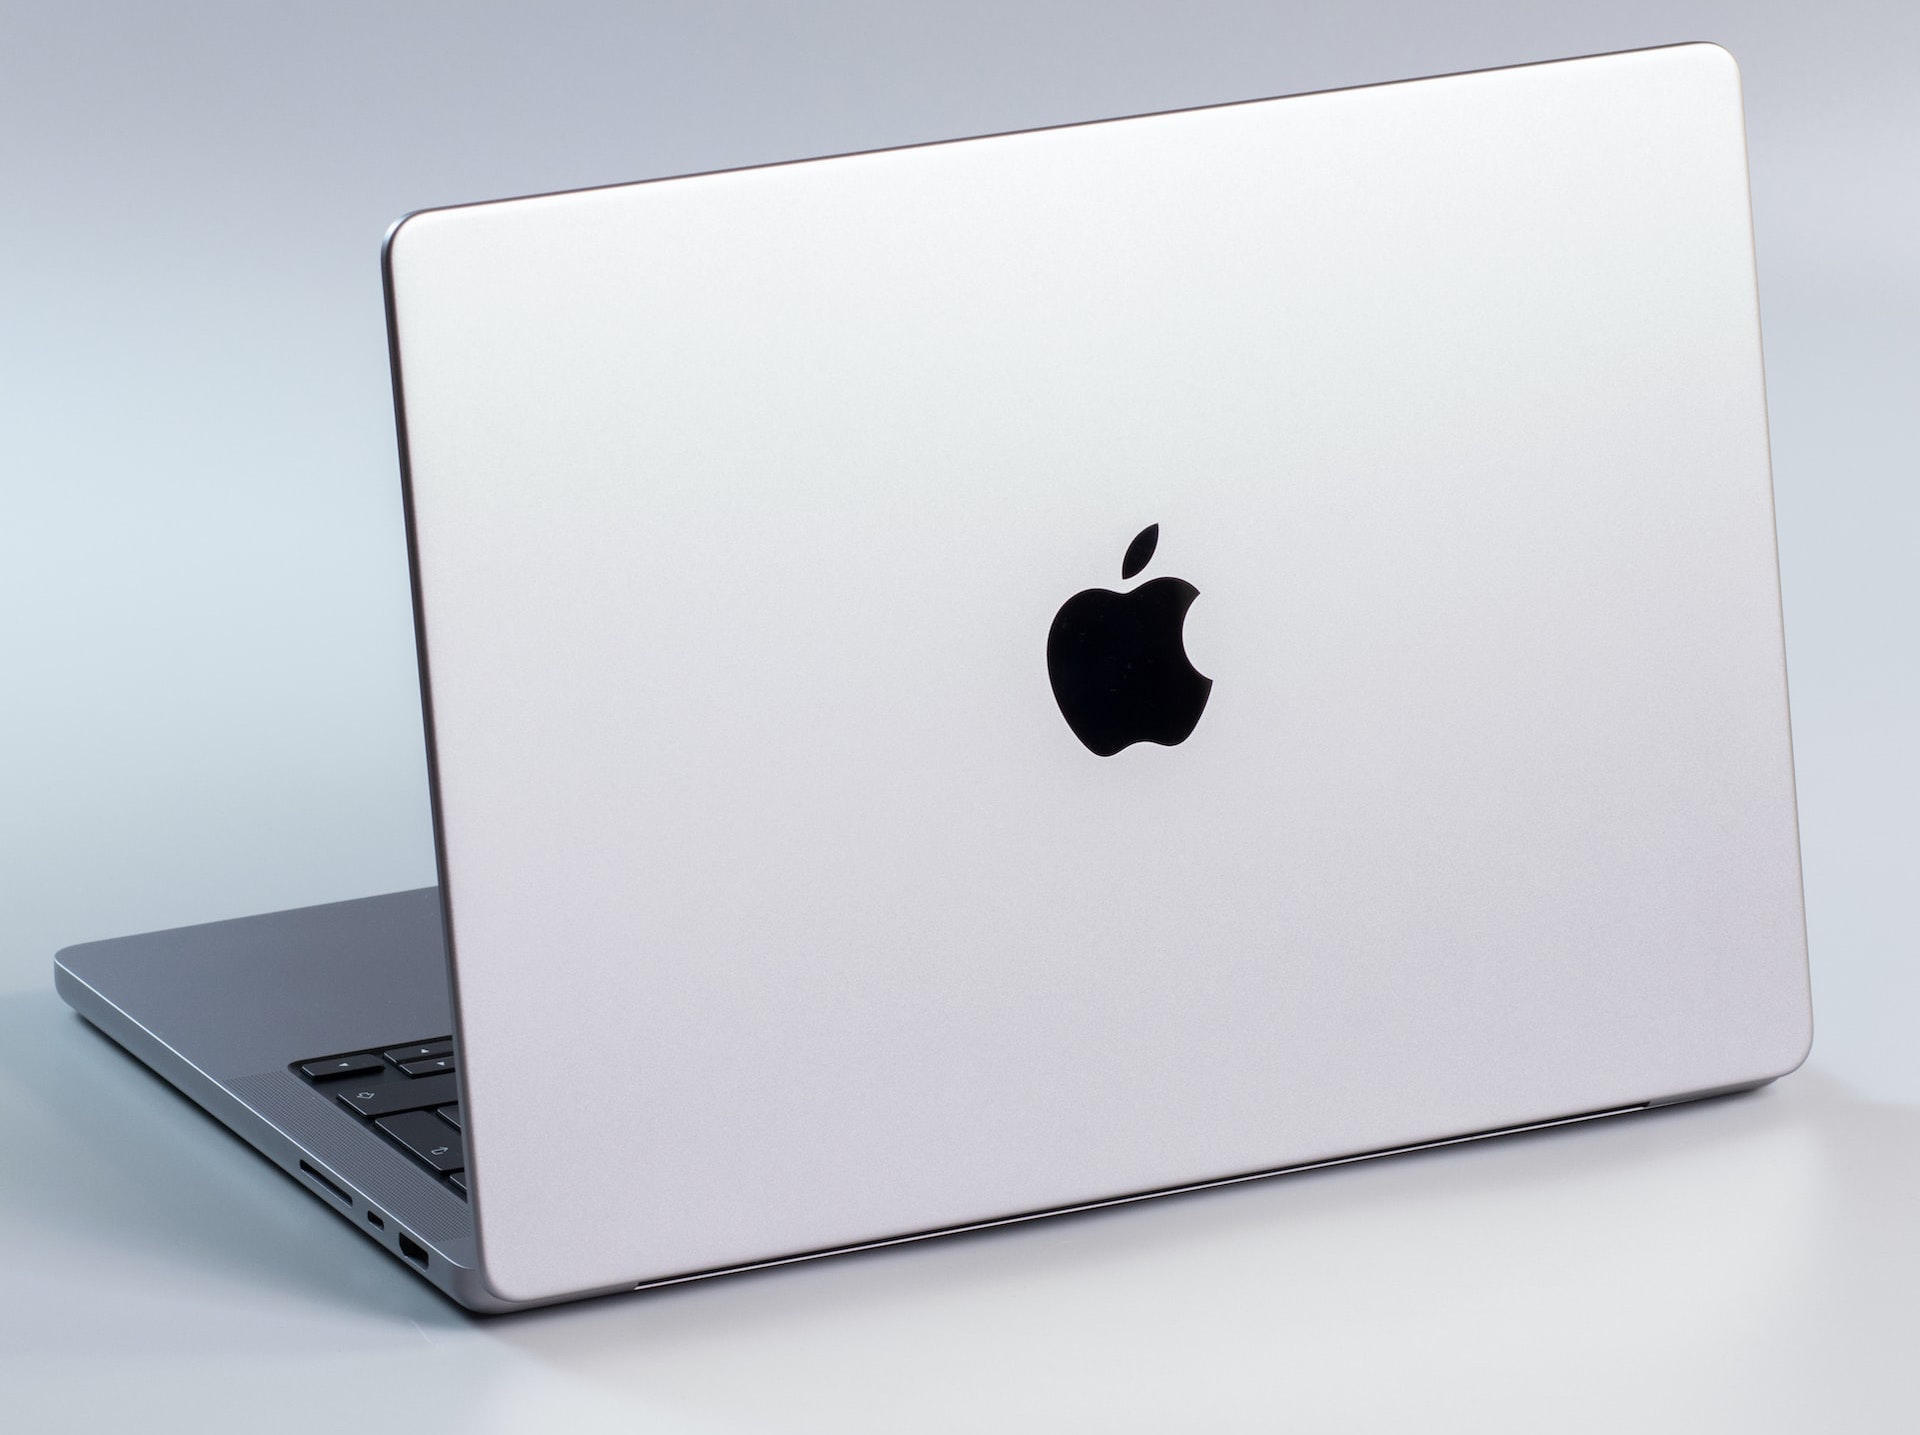 MacBook Pro 13 comparison